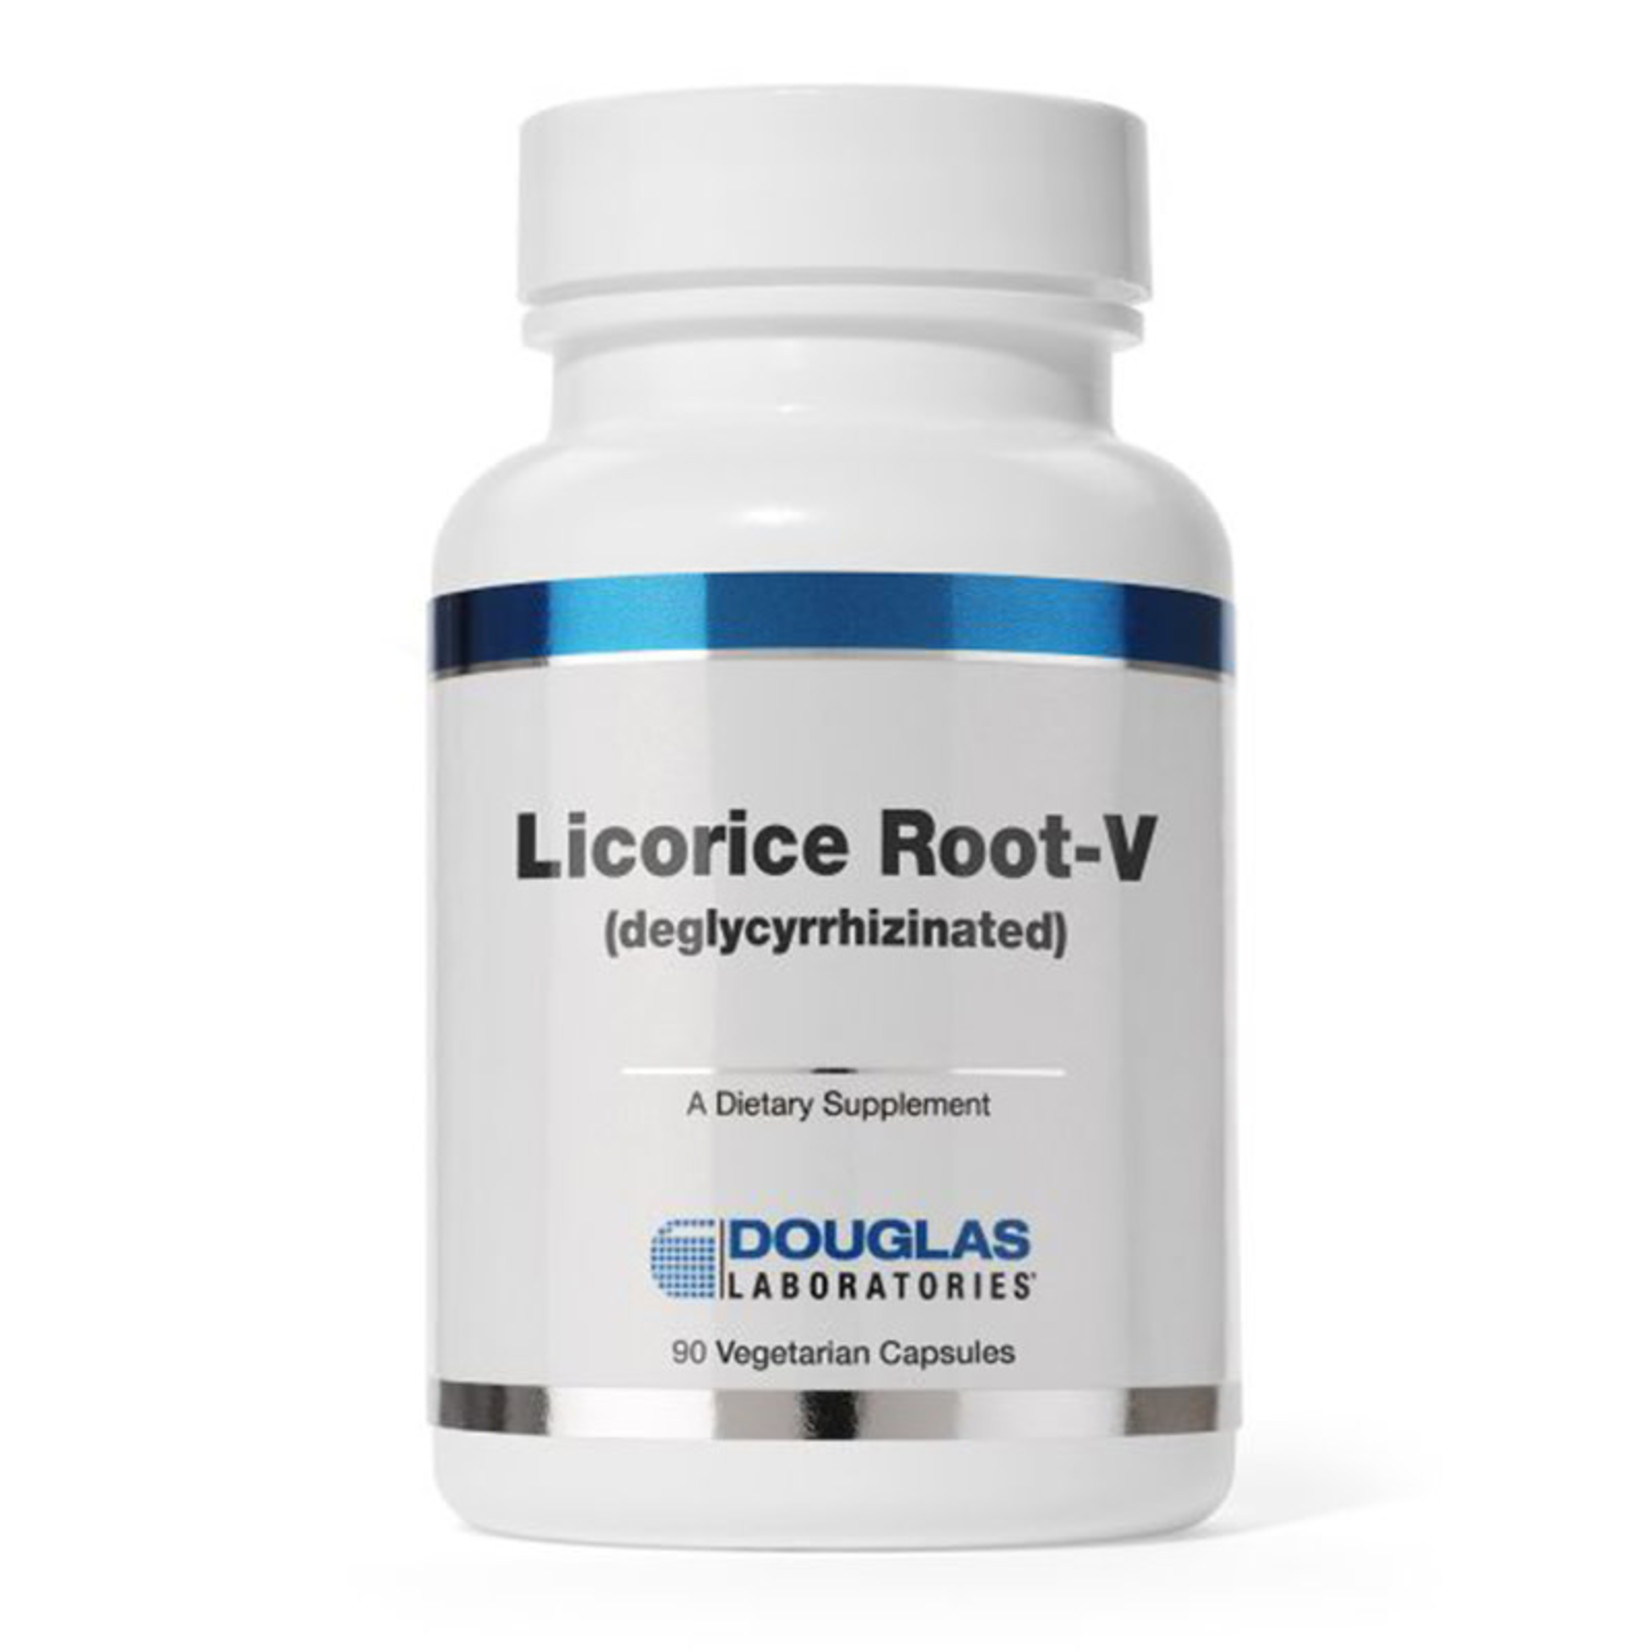 Douglas Labs Licorice Root-V Deglycyrrhizinated